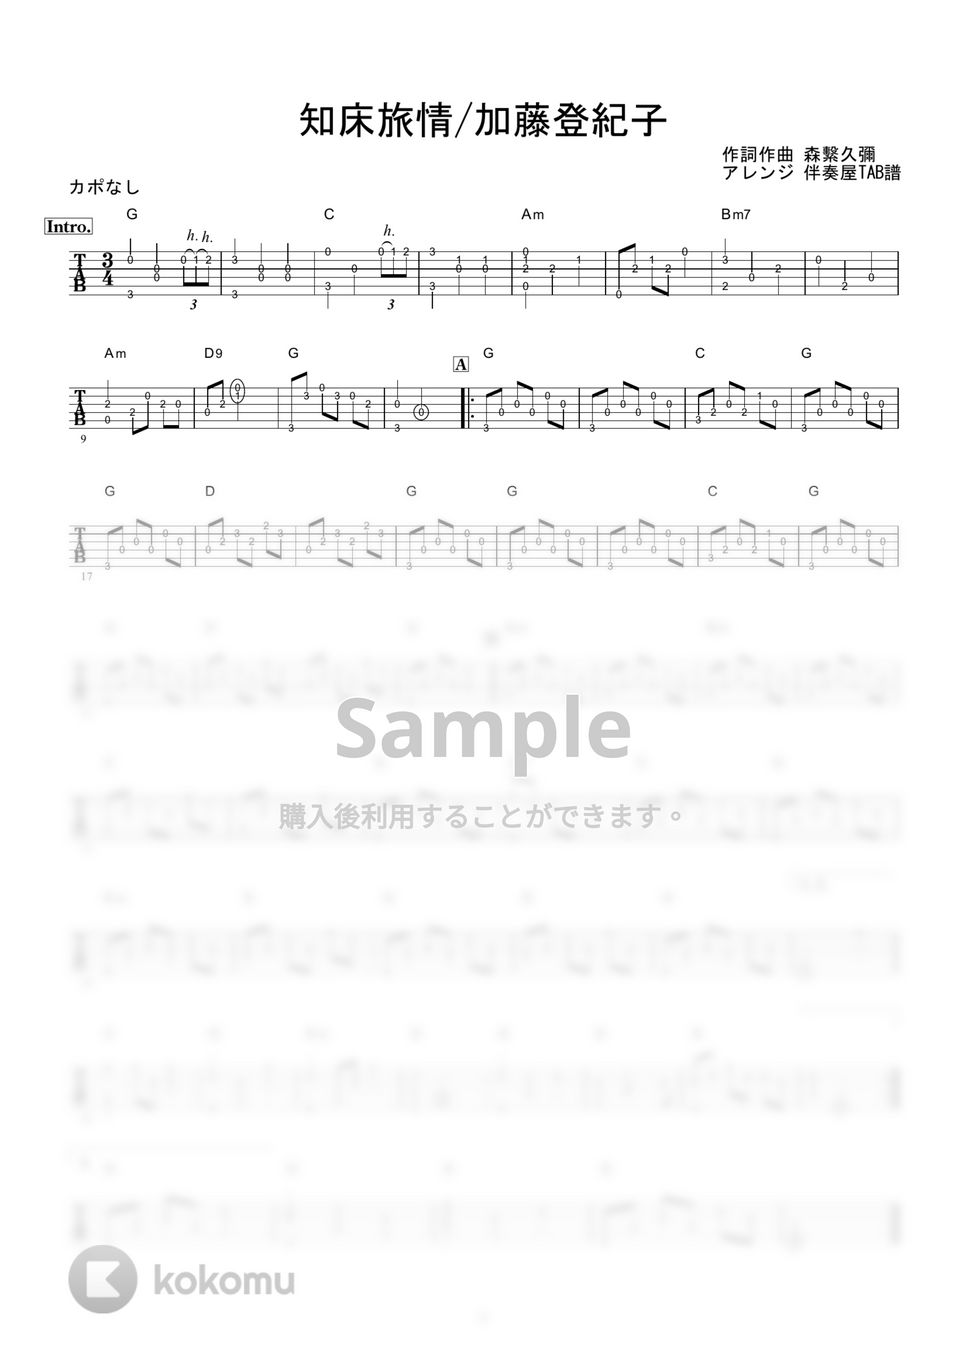 加藤登紀子 - 知床旅情 (ギター伴奏/イントロ・間奏ソロギター) by 伴奏屋TAB譜